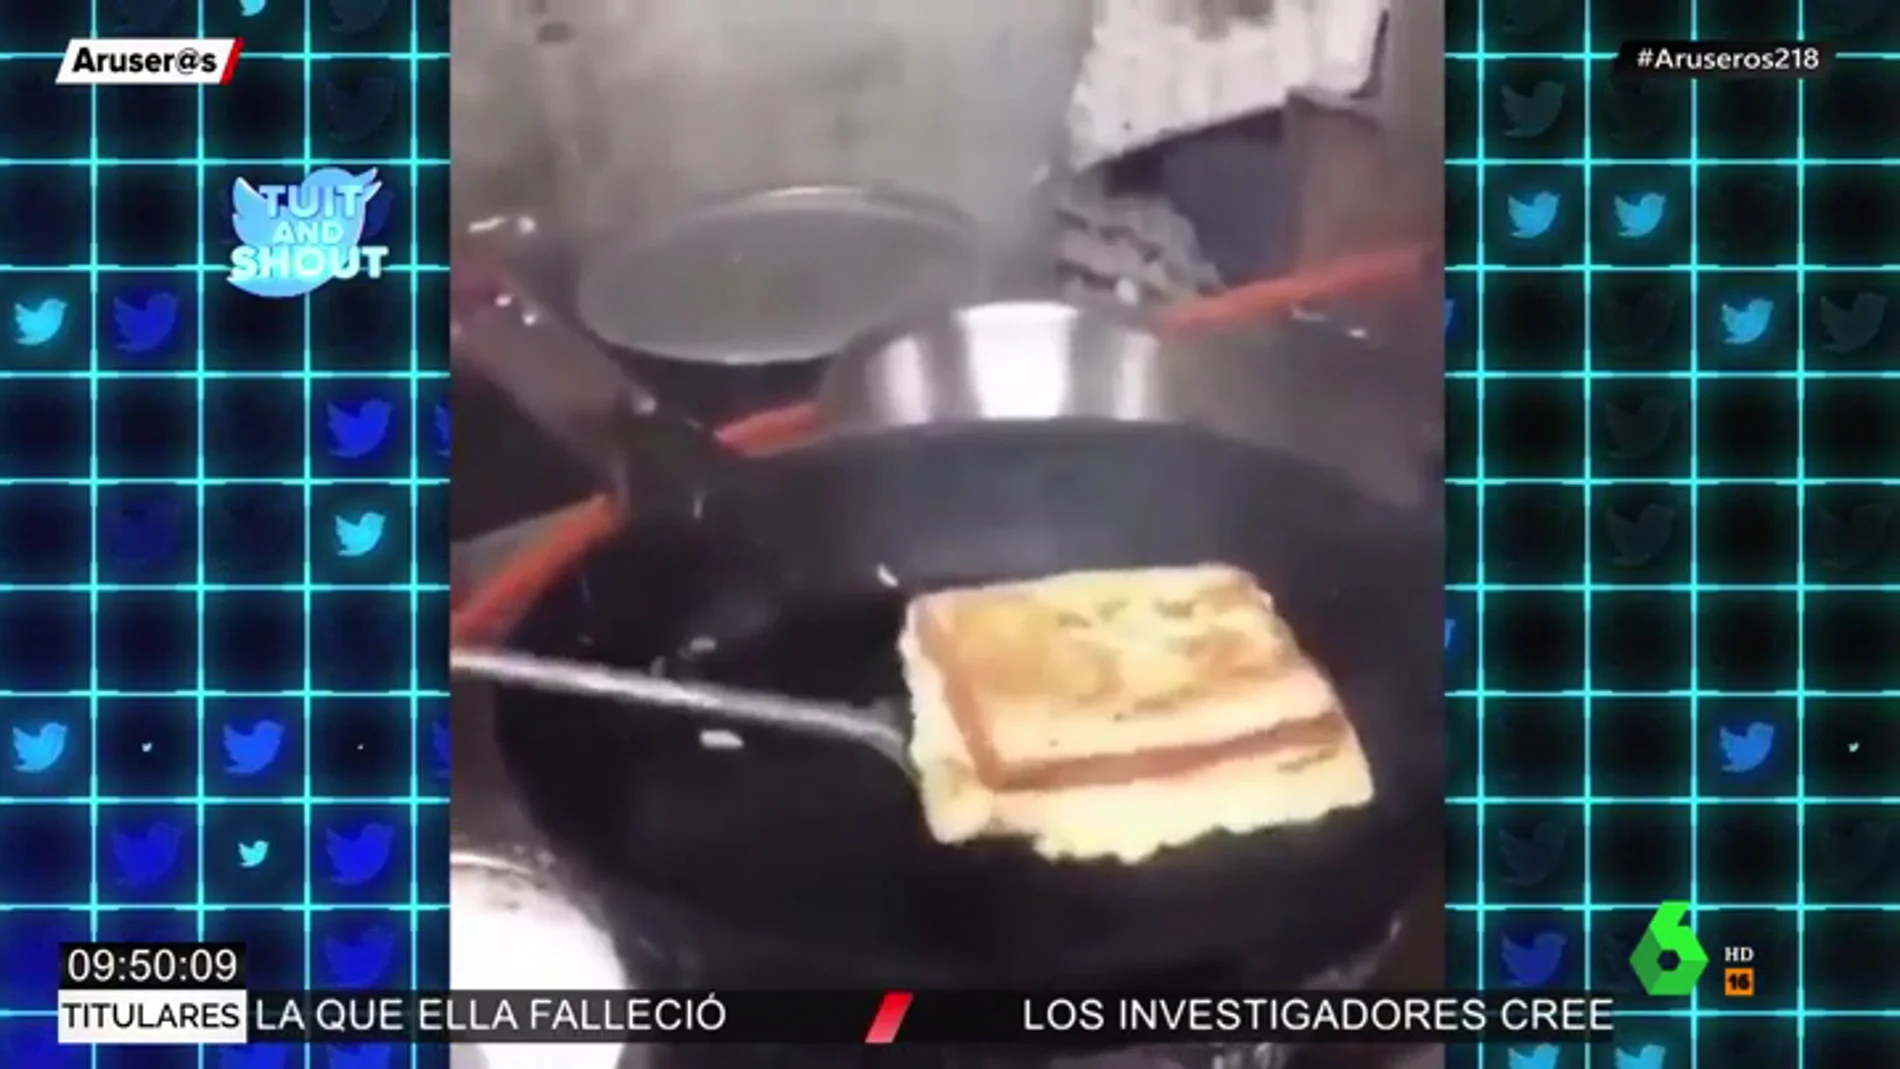 La ingeniosa forma de hacer un sándwich de tortilla francesa que ha sorprendido hasta al propio Alberto Chicote